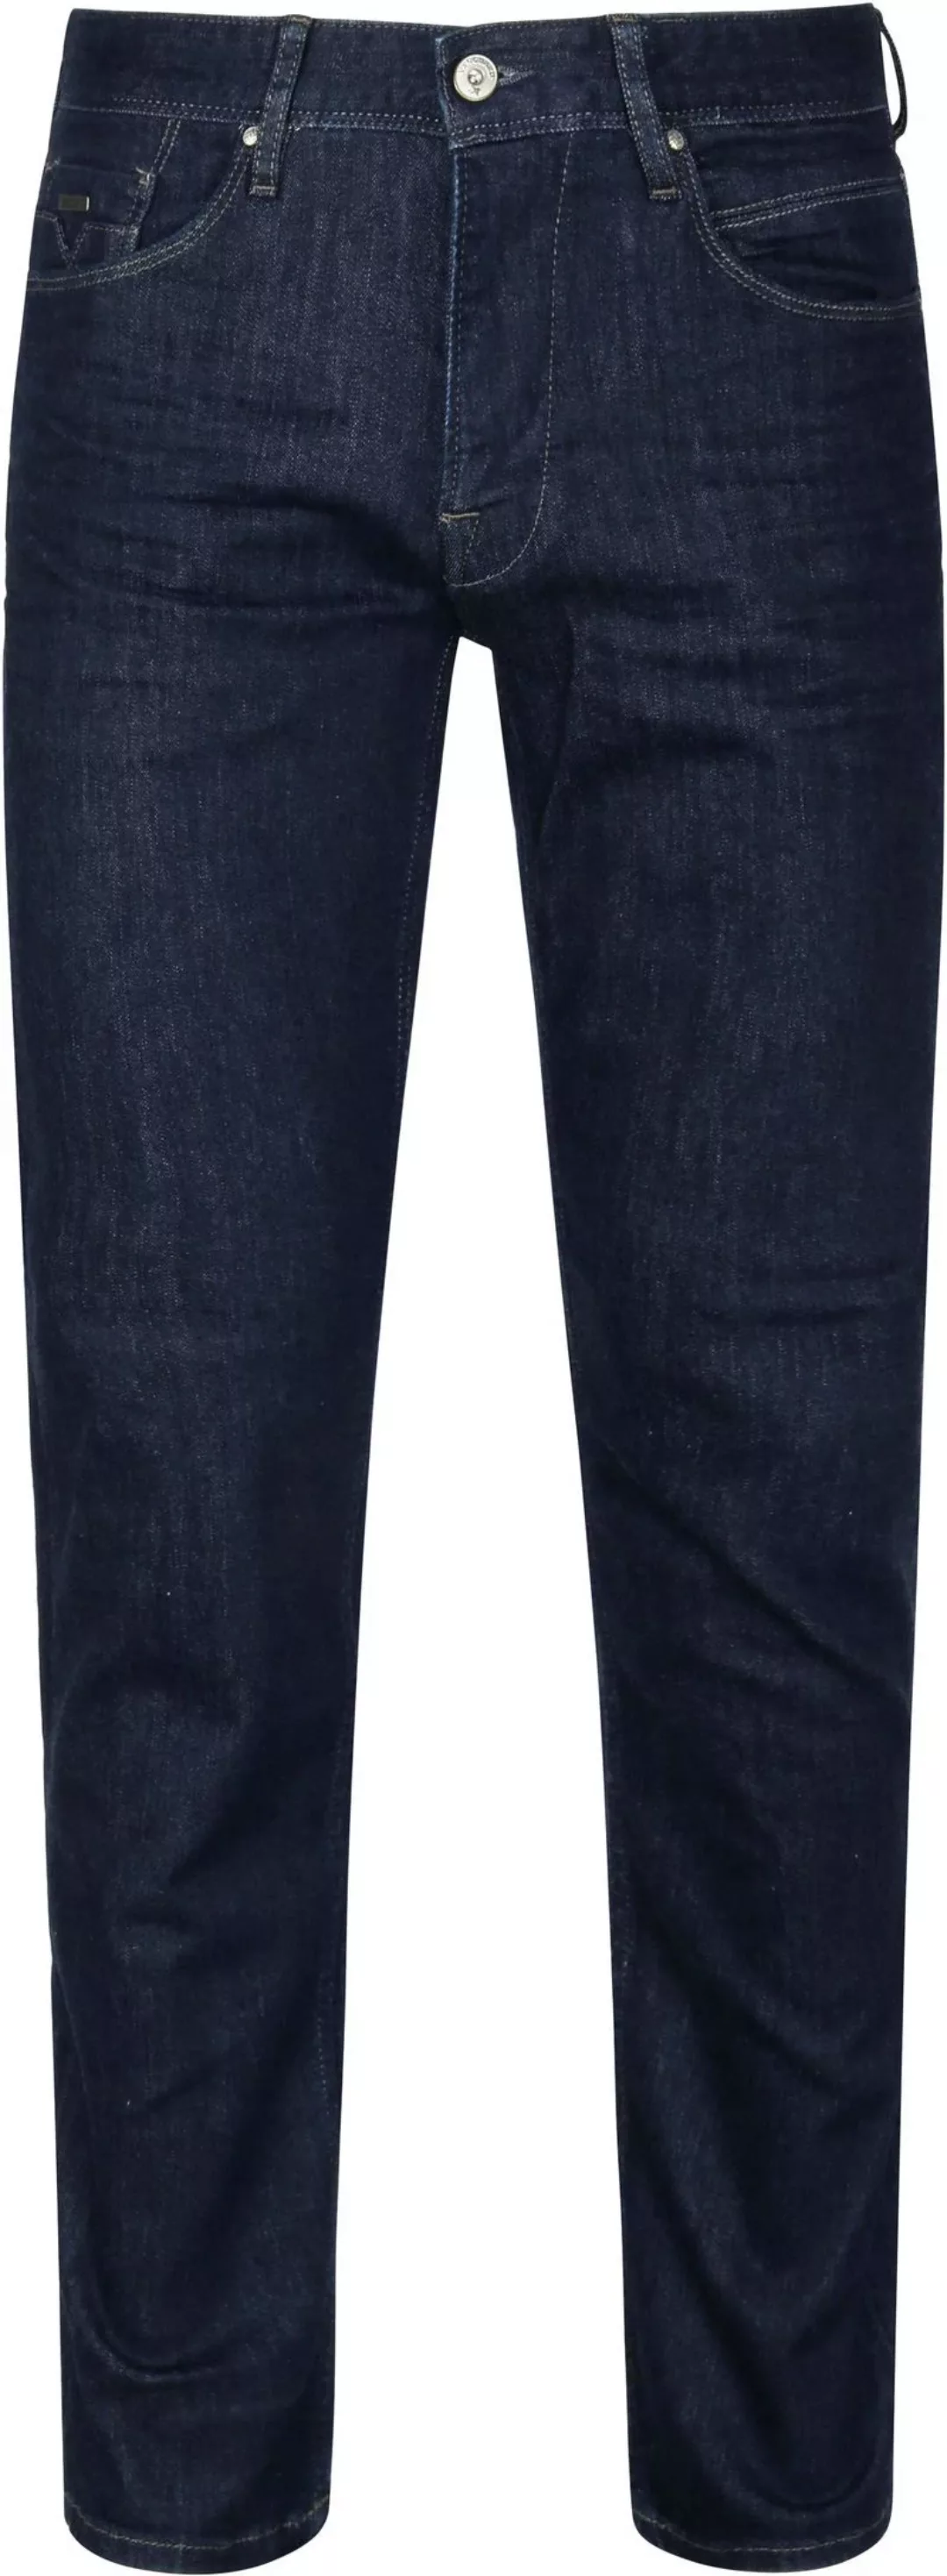 Vanguard Jeans V7 Rider Dunkelblau - Größe W 33 - L 34 günstig online kaufen